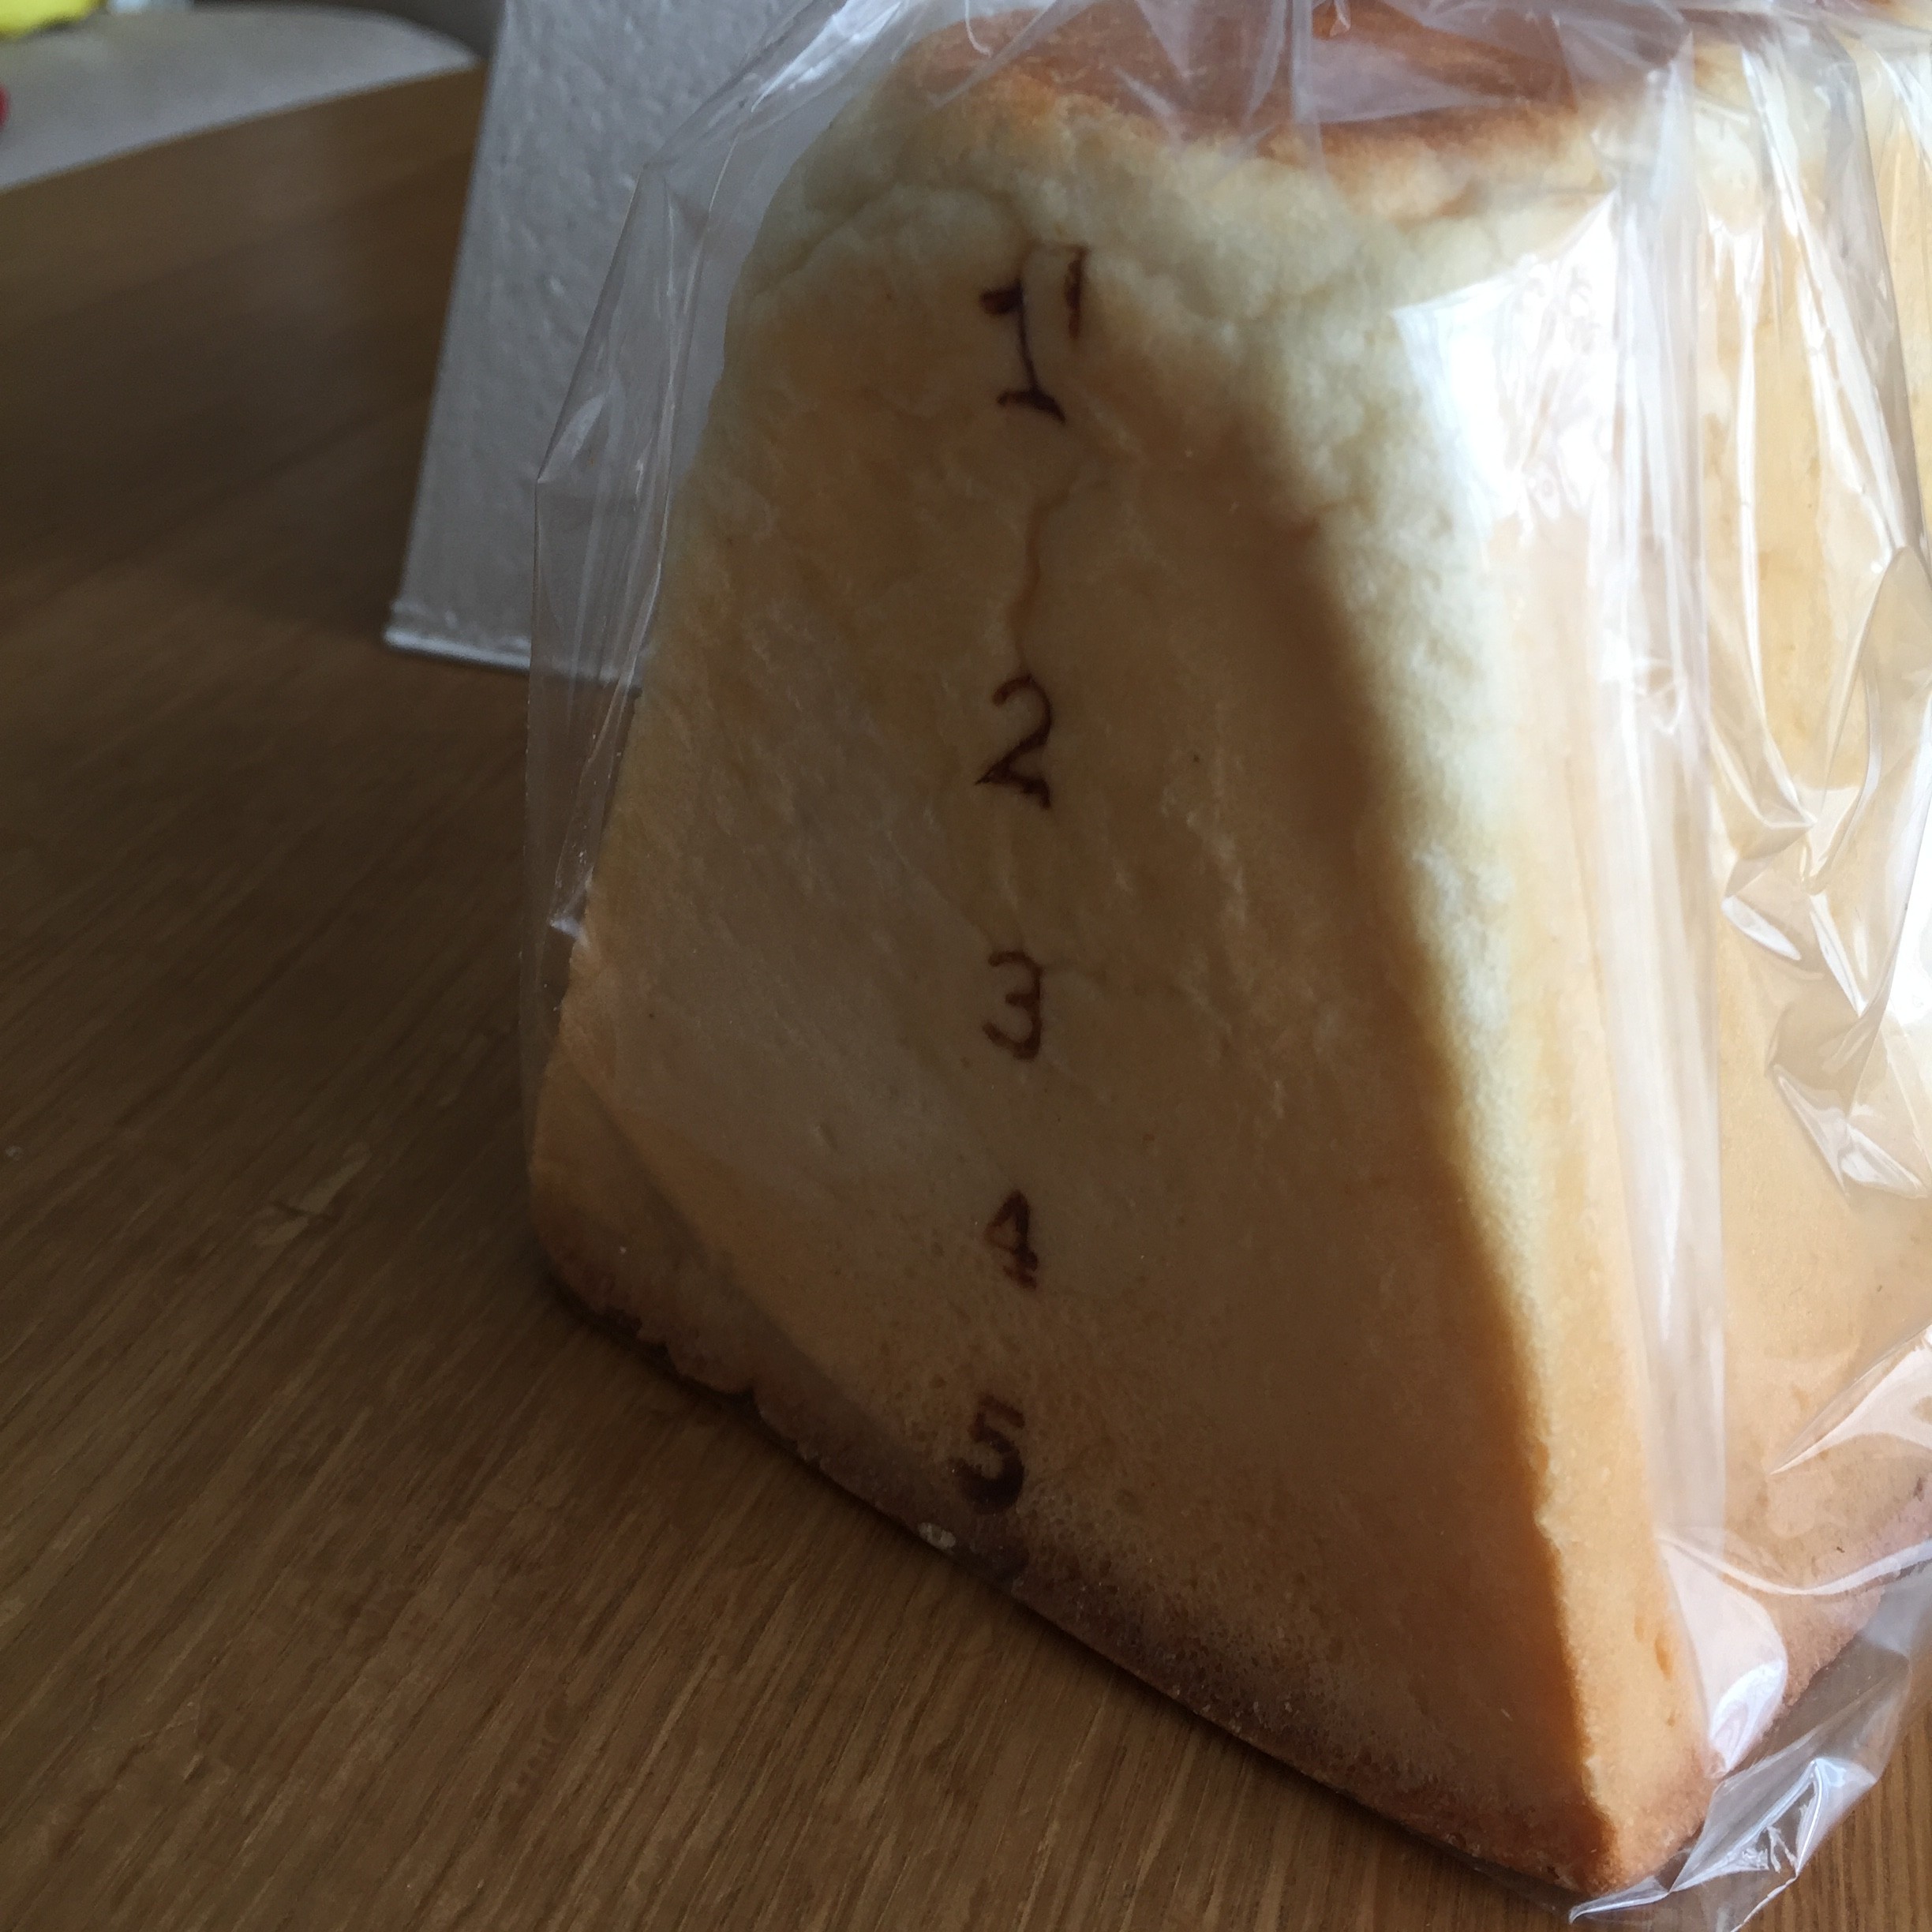 ちょっと遠出しても買いに行きたい。たのしくておいしい跳び箱の形をした食パン。その名も「とびばこパン」1月24日まで京都伊勢丹で購入できます。